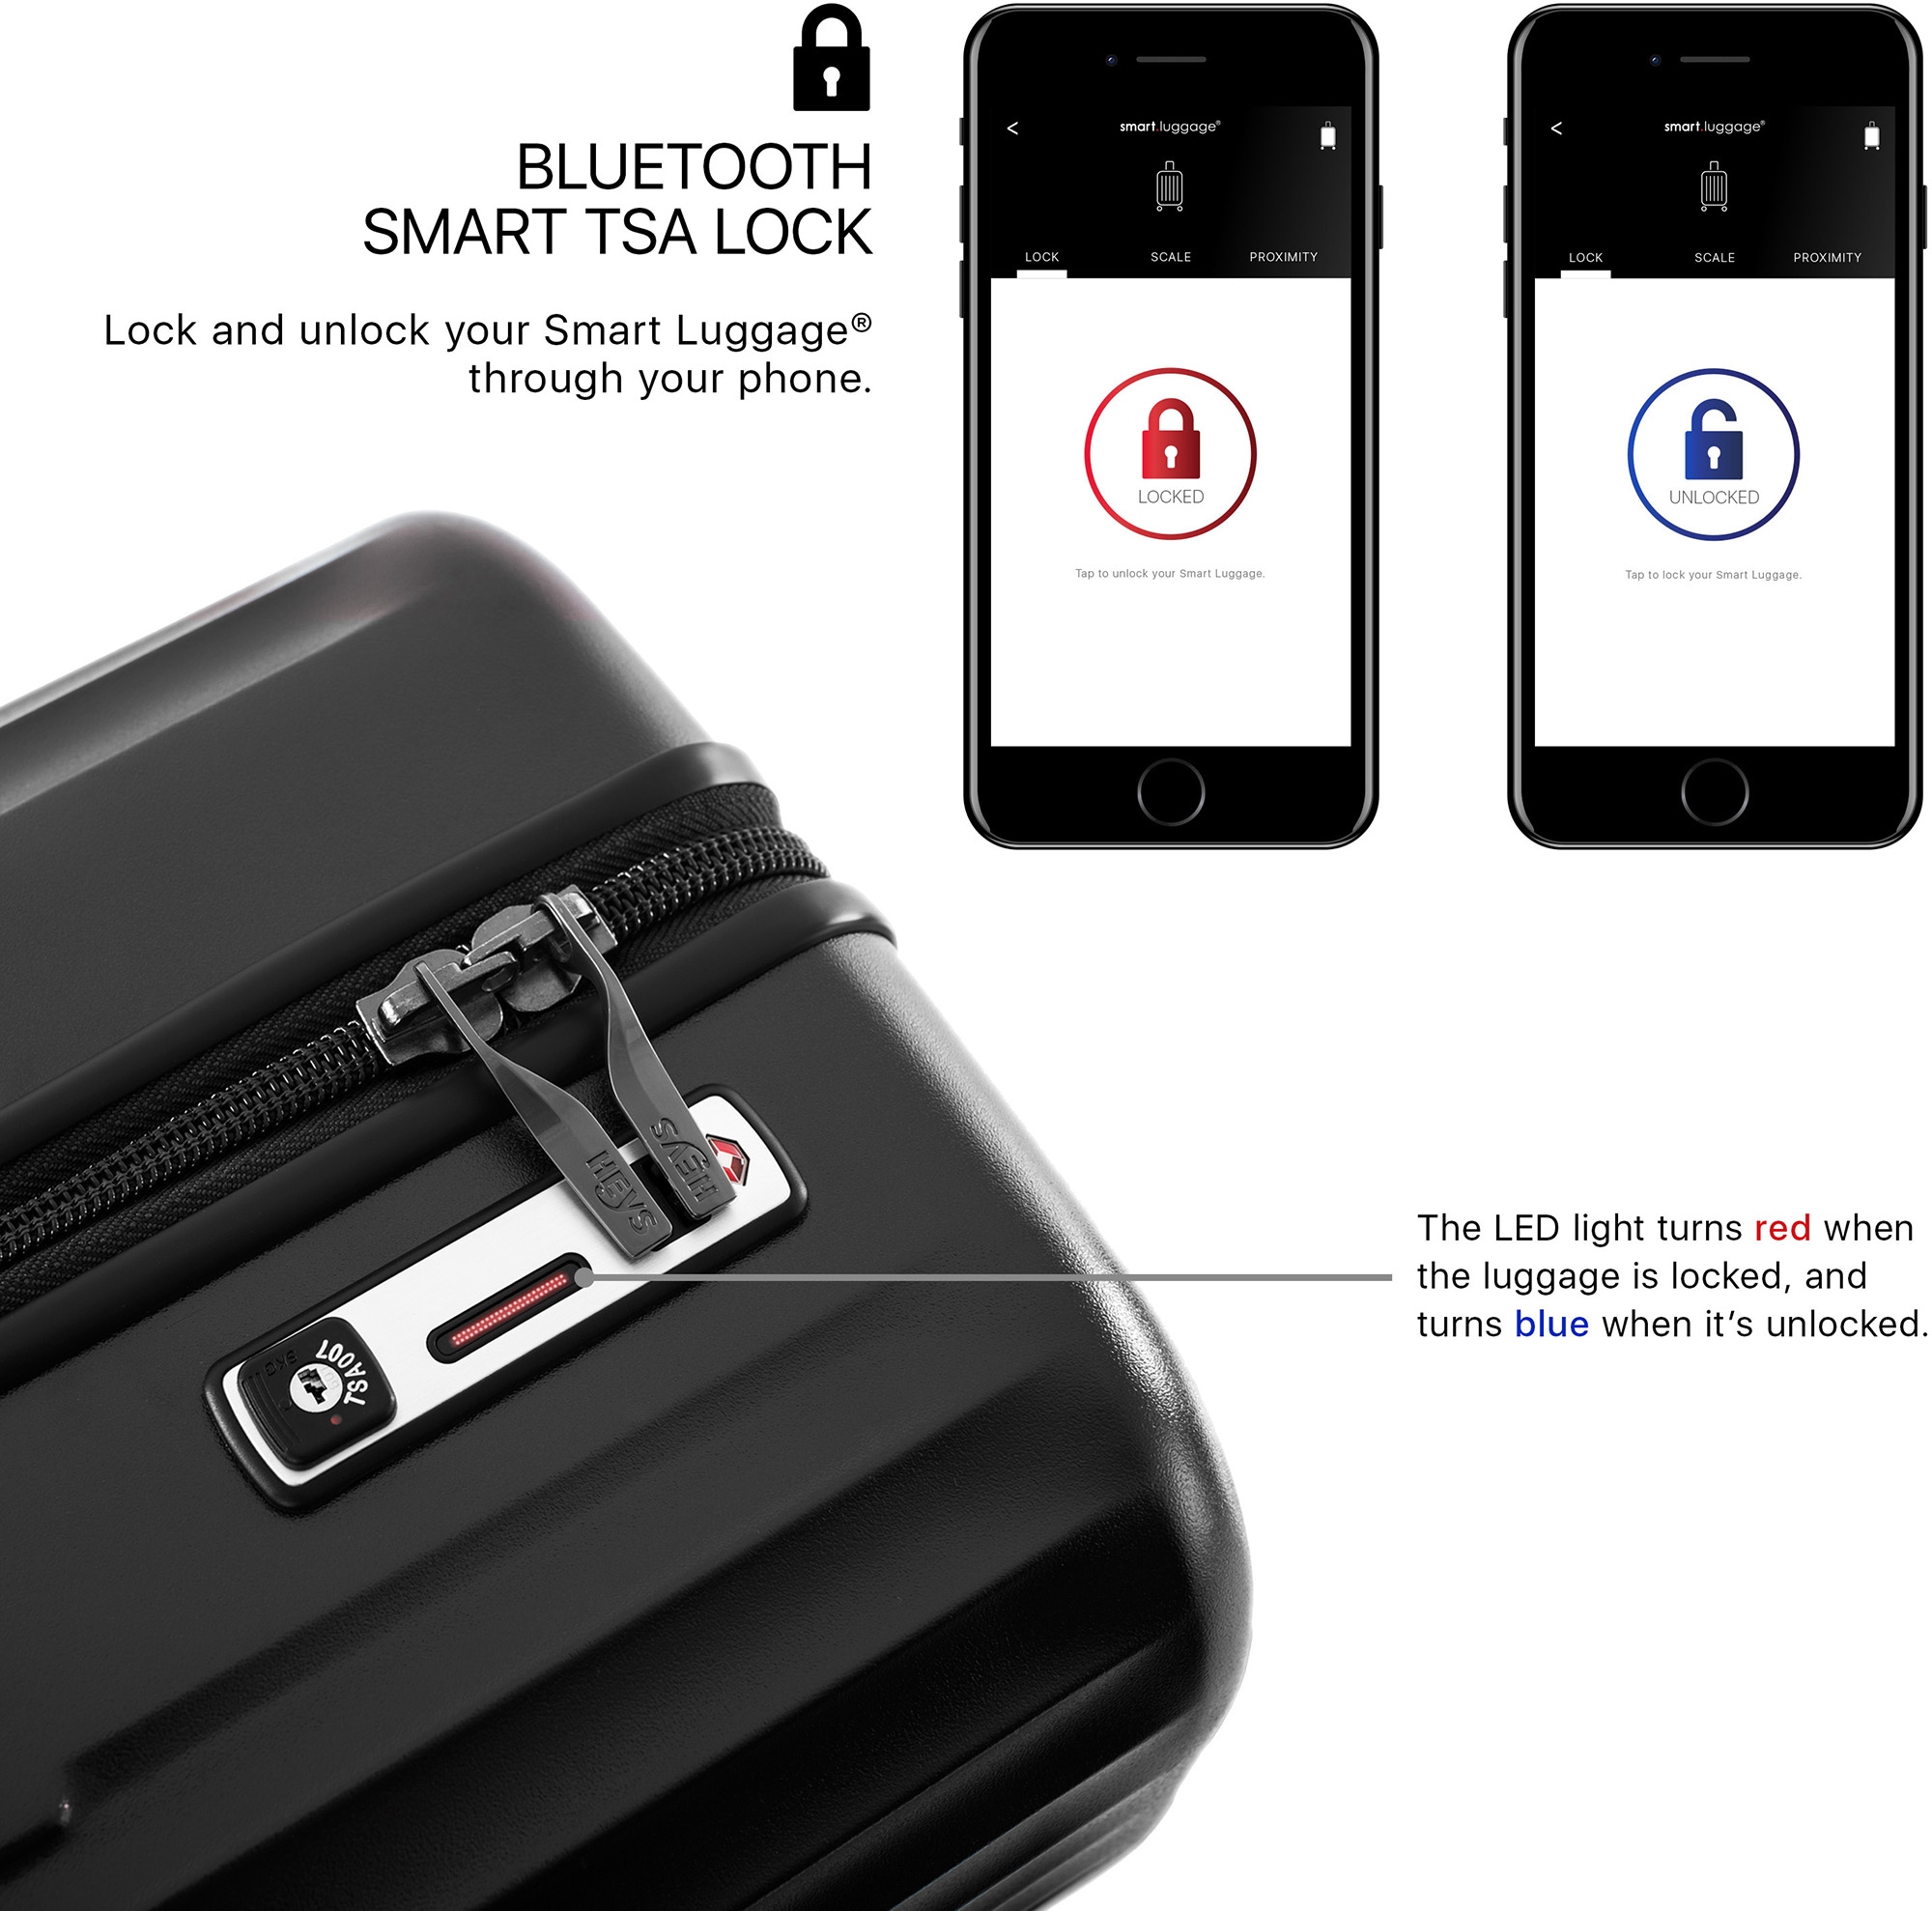 Heys Hartschalen-Trolley »Smart Luggage®, 76 cm«, 4 Rollen, Koffer groß vollständig venetztes High-End-Gepäck mit App-Funktion